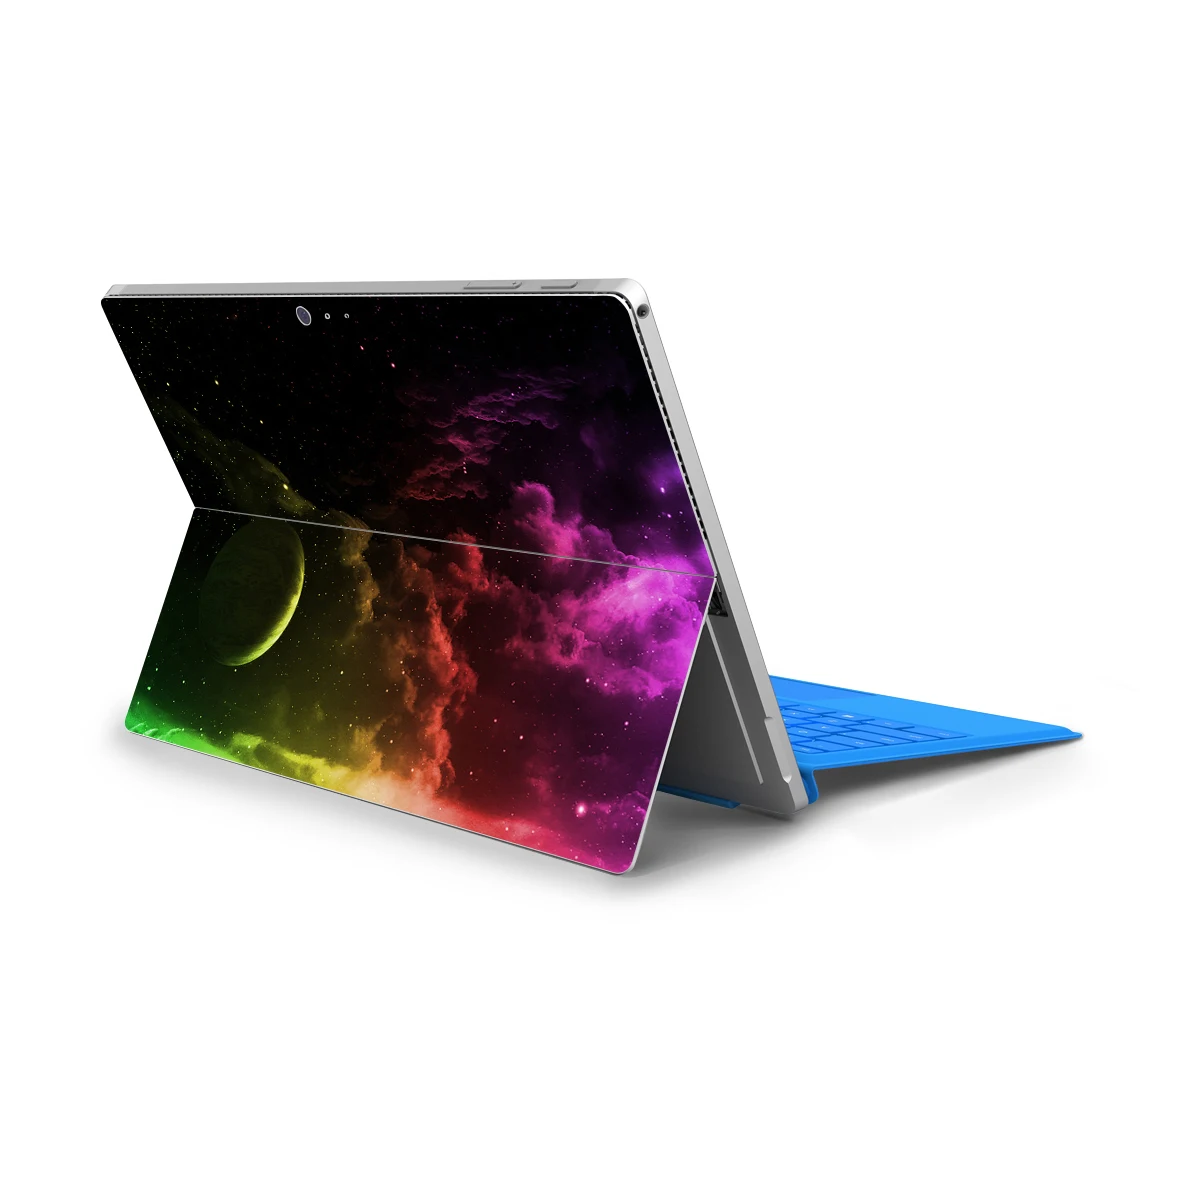 Для microsoft Surface Pro 4 Pro 5 Pro 6 виниловые наклейки Звездное небо Стильные наклейки для ноутбука для Surface Pro 4 защитная пленка